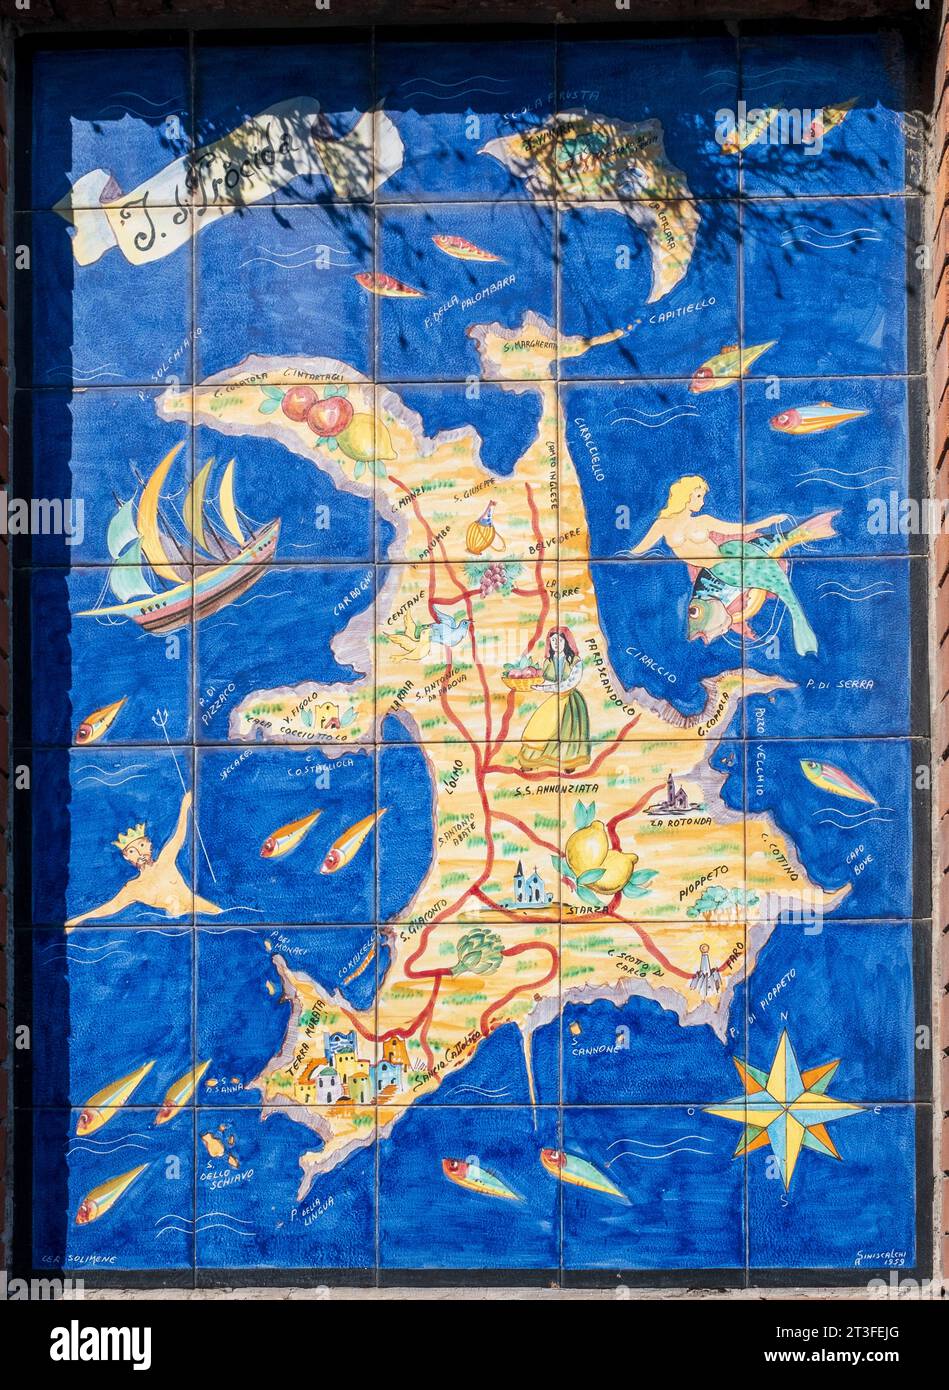 Italien, Kampanien, Bucht von Neapel, Insel Procida, Keramik, die die Insel Procida darstellt Stockfoto